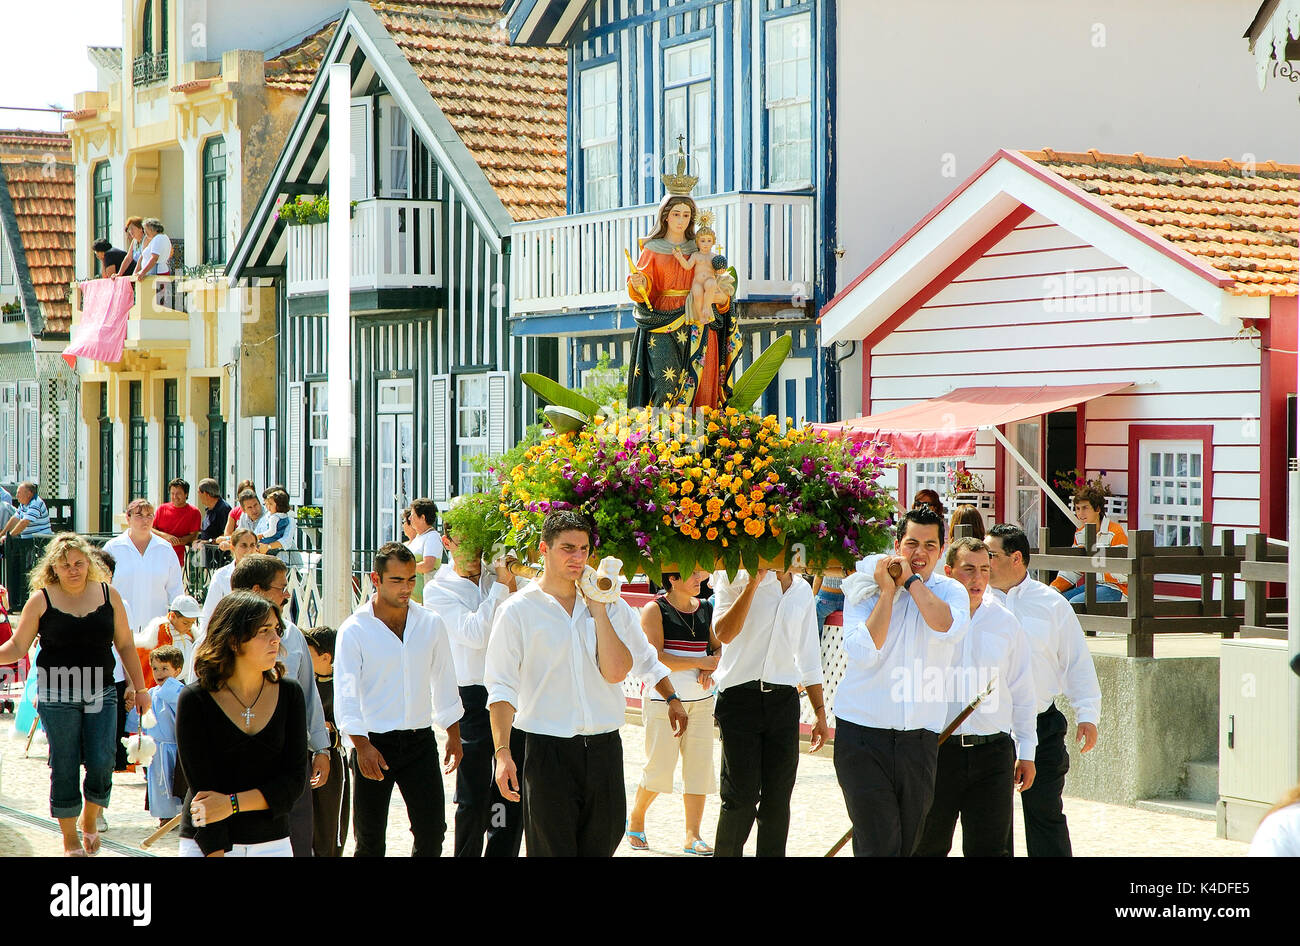 Religious procession during the traditional festivity of Nossa Senhora da Saúde. Costa Nova, Portugal Stock Photo